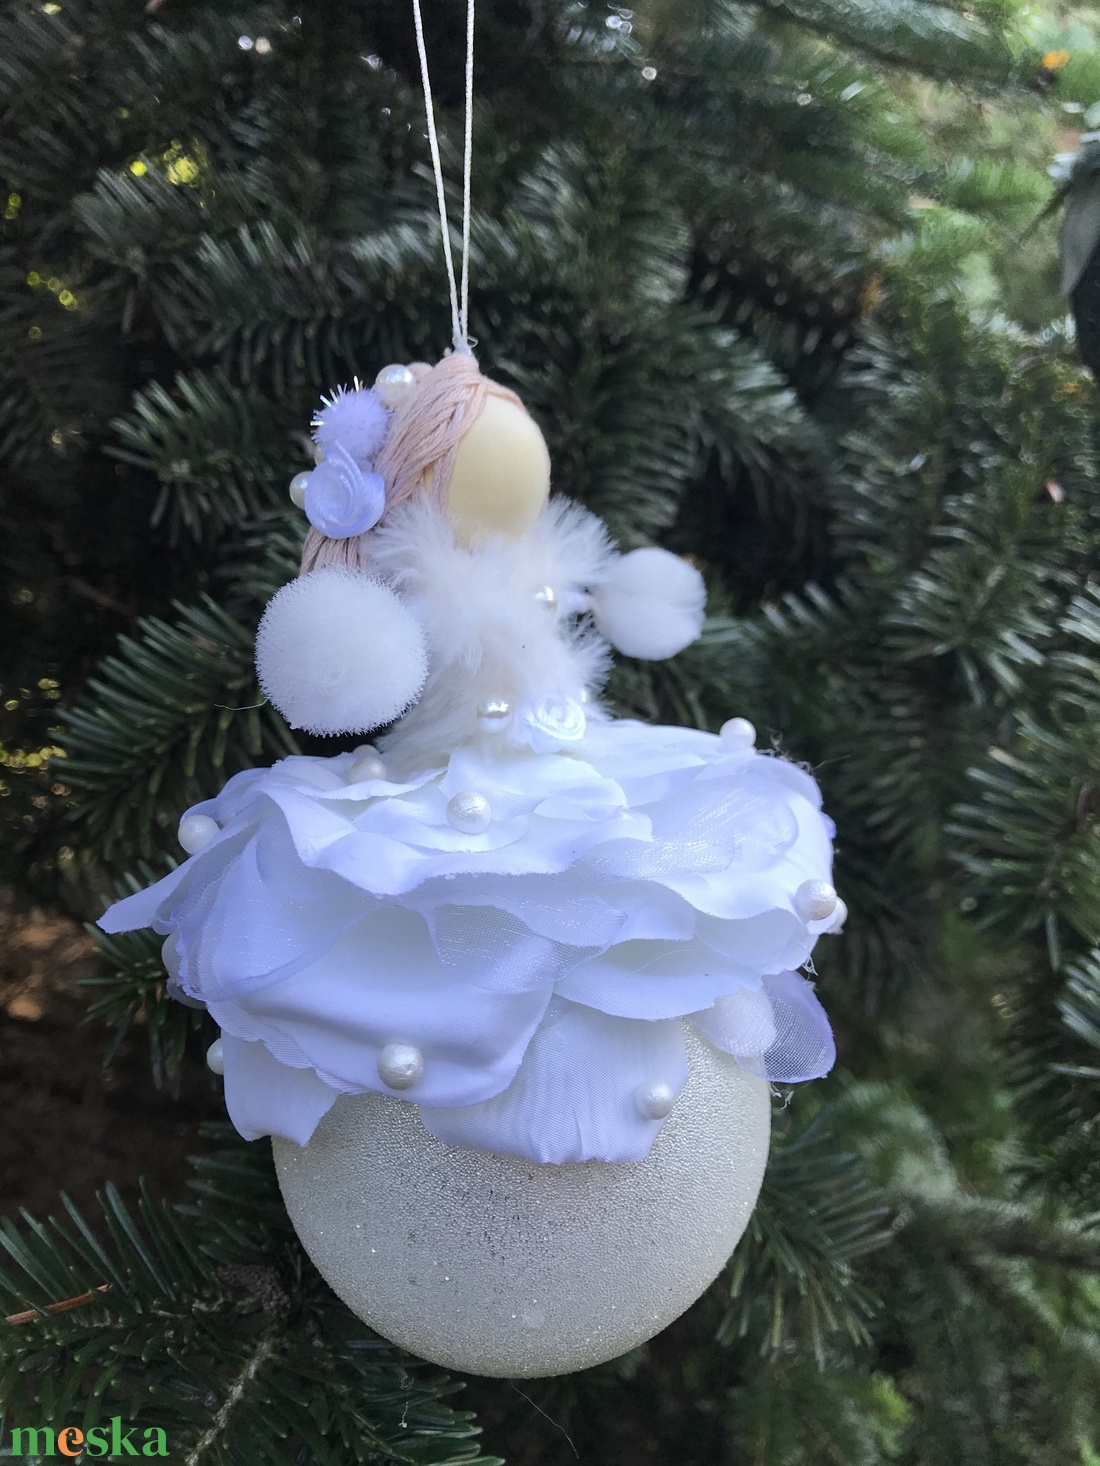 Karácsonyi dísz gömb tündér hófehér selyem gyöngy drót baba üveggömb virág - karácsony - karácsonyi lakásdekoráció - karácsonyfadíszek - Meska.hu